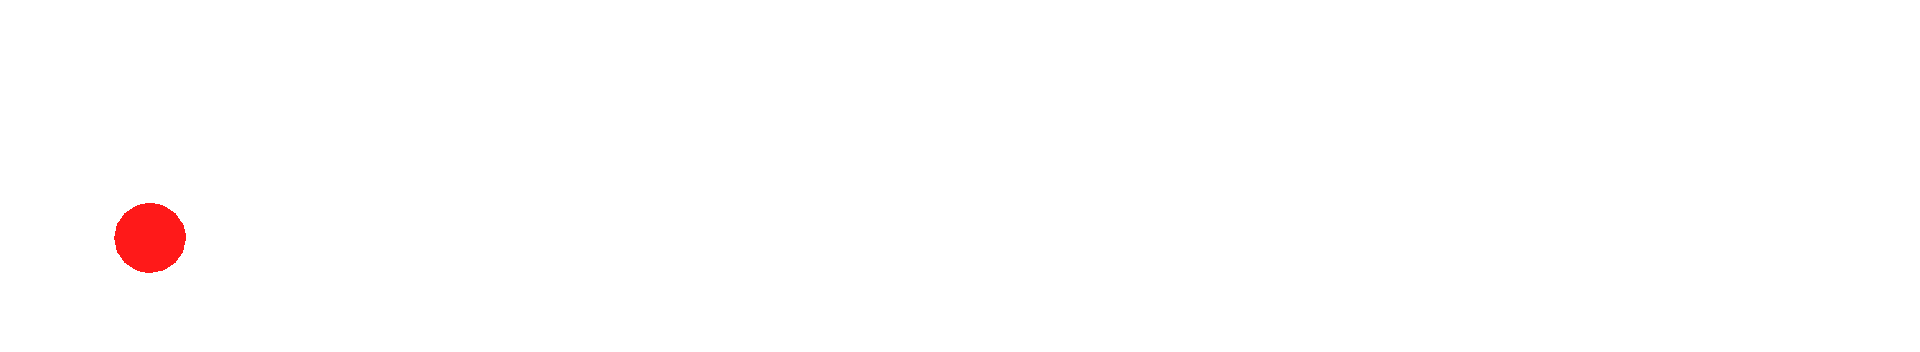 attractor logo